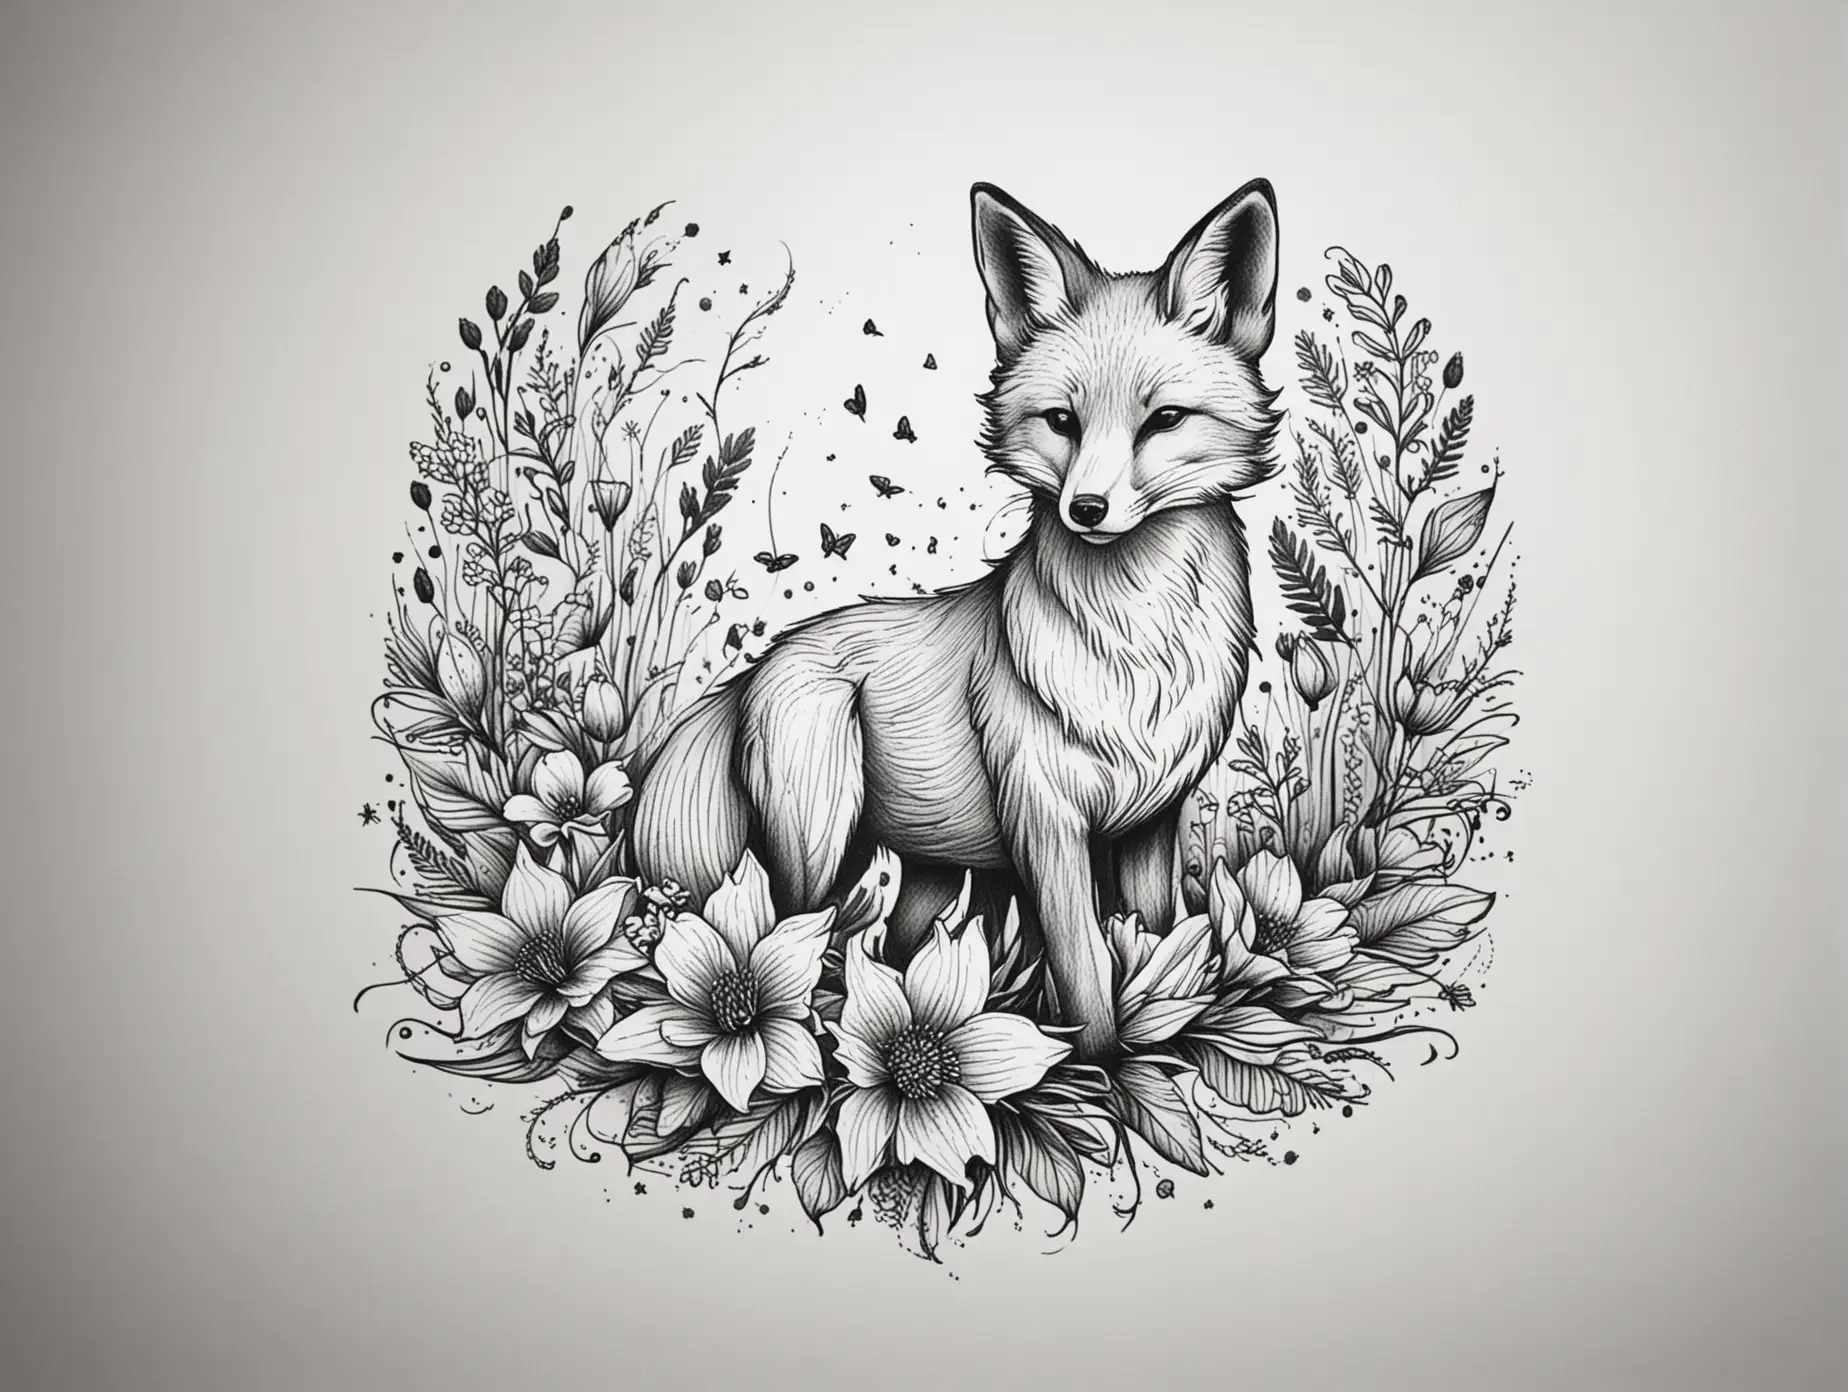 Minimalist Fox Playing in Flower Field Tattoo Design